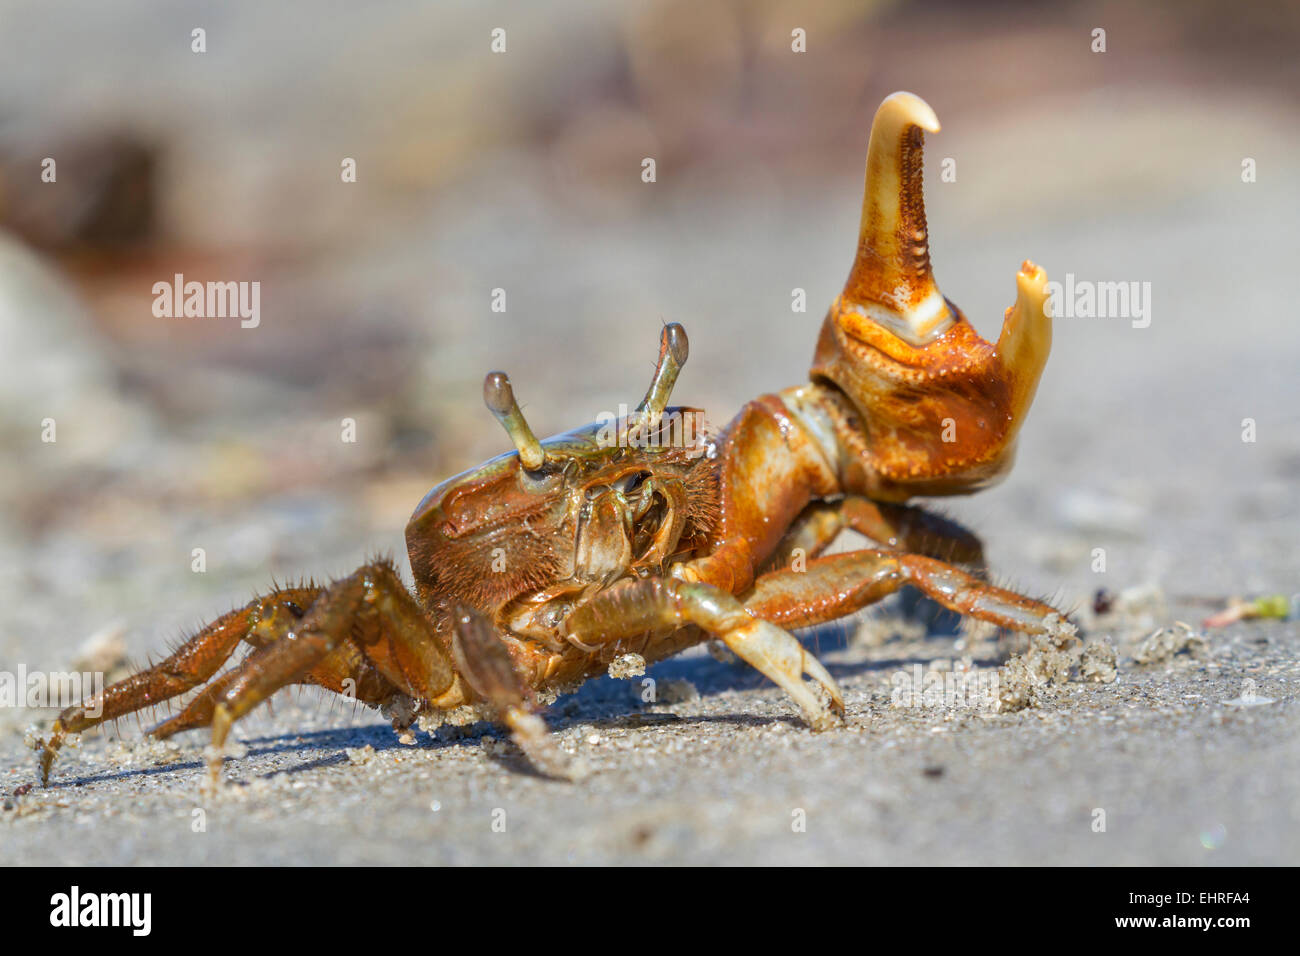 Atlantic marsh fiddler crab (Uca pugnax) in defense posture, Galveston, Texas, USA. Stock Photo